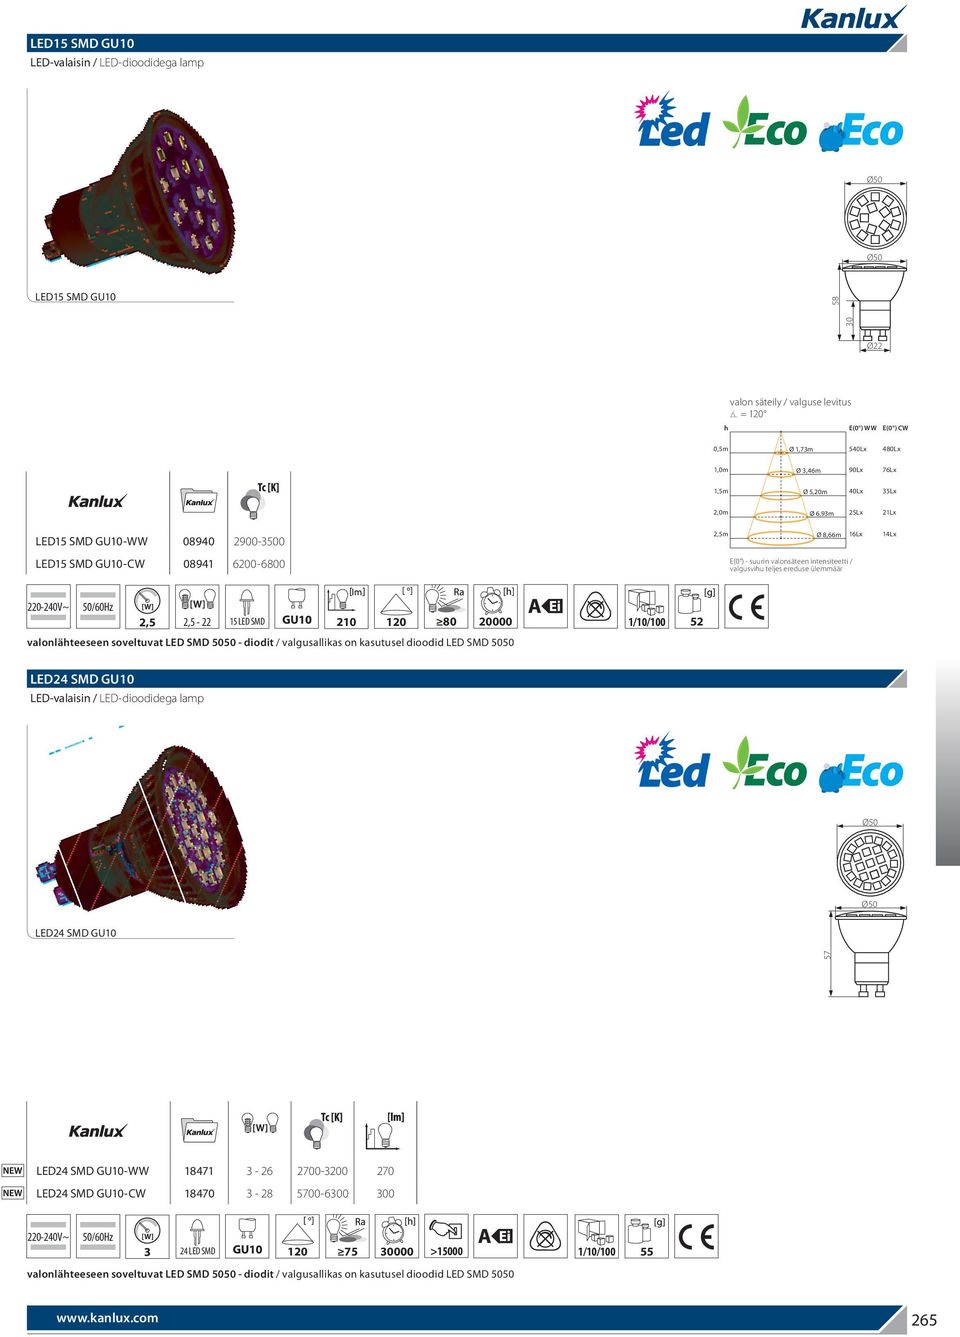 20000 valonlähteeseen soveltuvat LED SMD 5050 - diodit / valgusallikas on kasutusel dioodid LED SMD 5050 1/10/100 52 LED24 SMD GU10 LED24 SMD GU10 57 LED24 SMD GU10-WW 18471 3-26 2700-3200 270